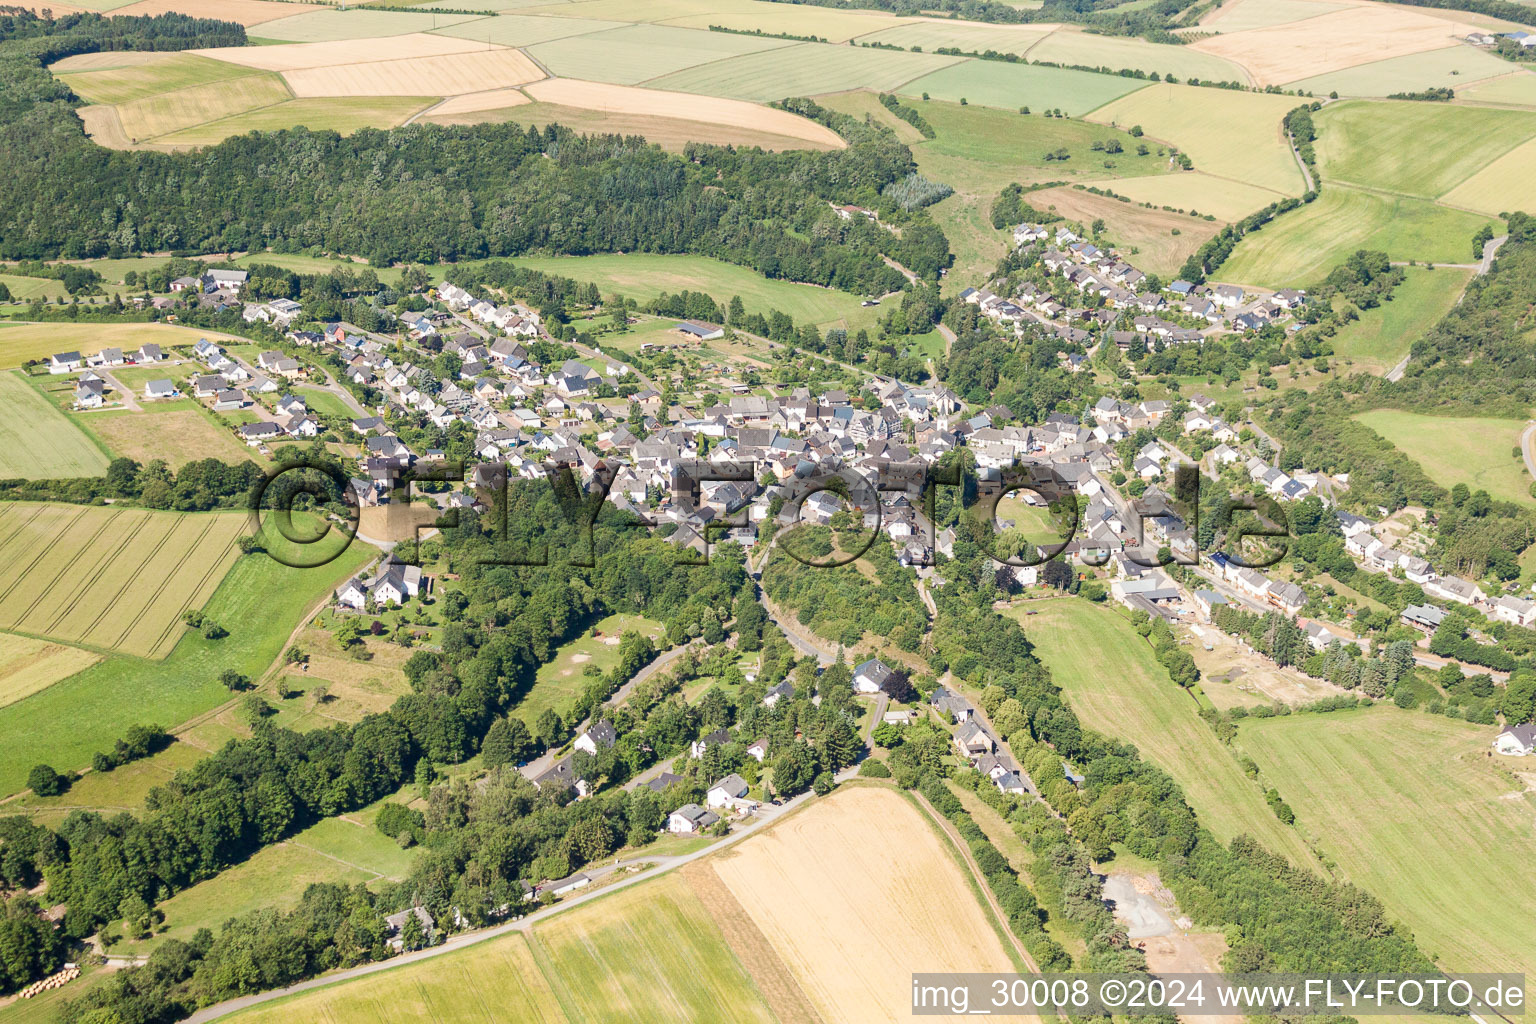 Vue aérienne de Champs agricoles et surfaces utilisables à Mengerschied dans le département Rhénanie-Palatinat, Allemagne